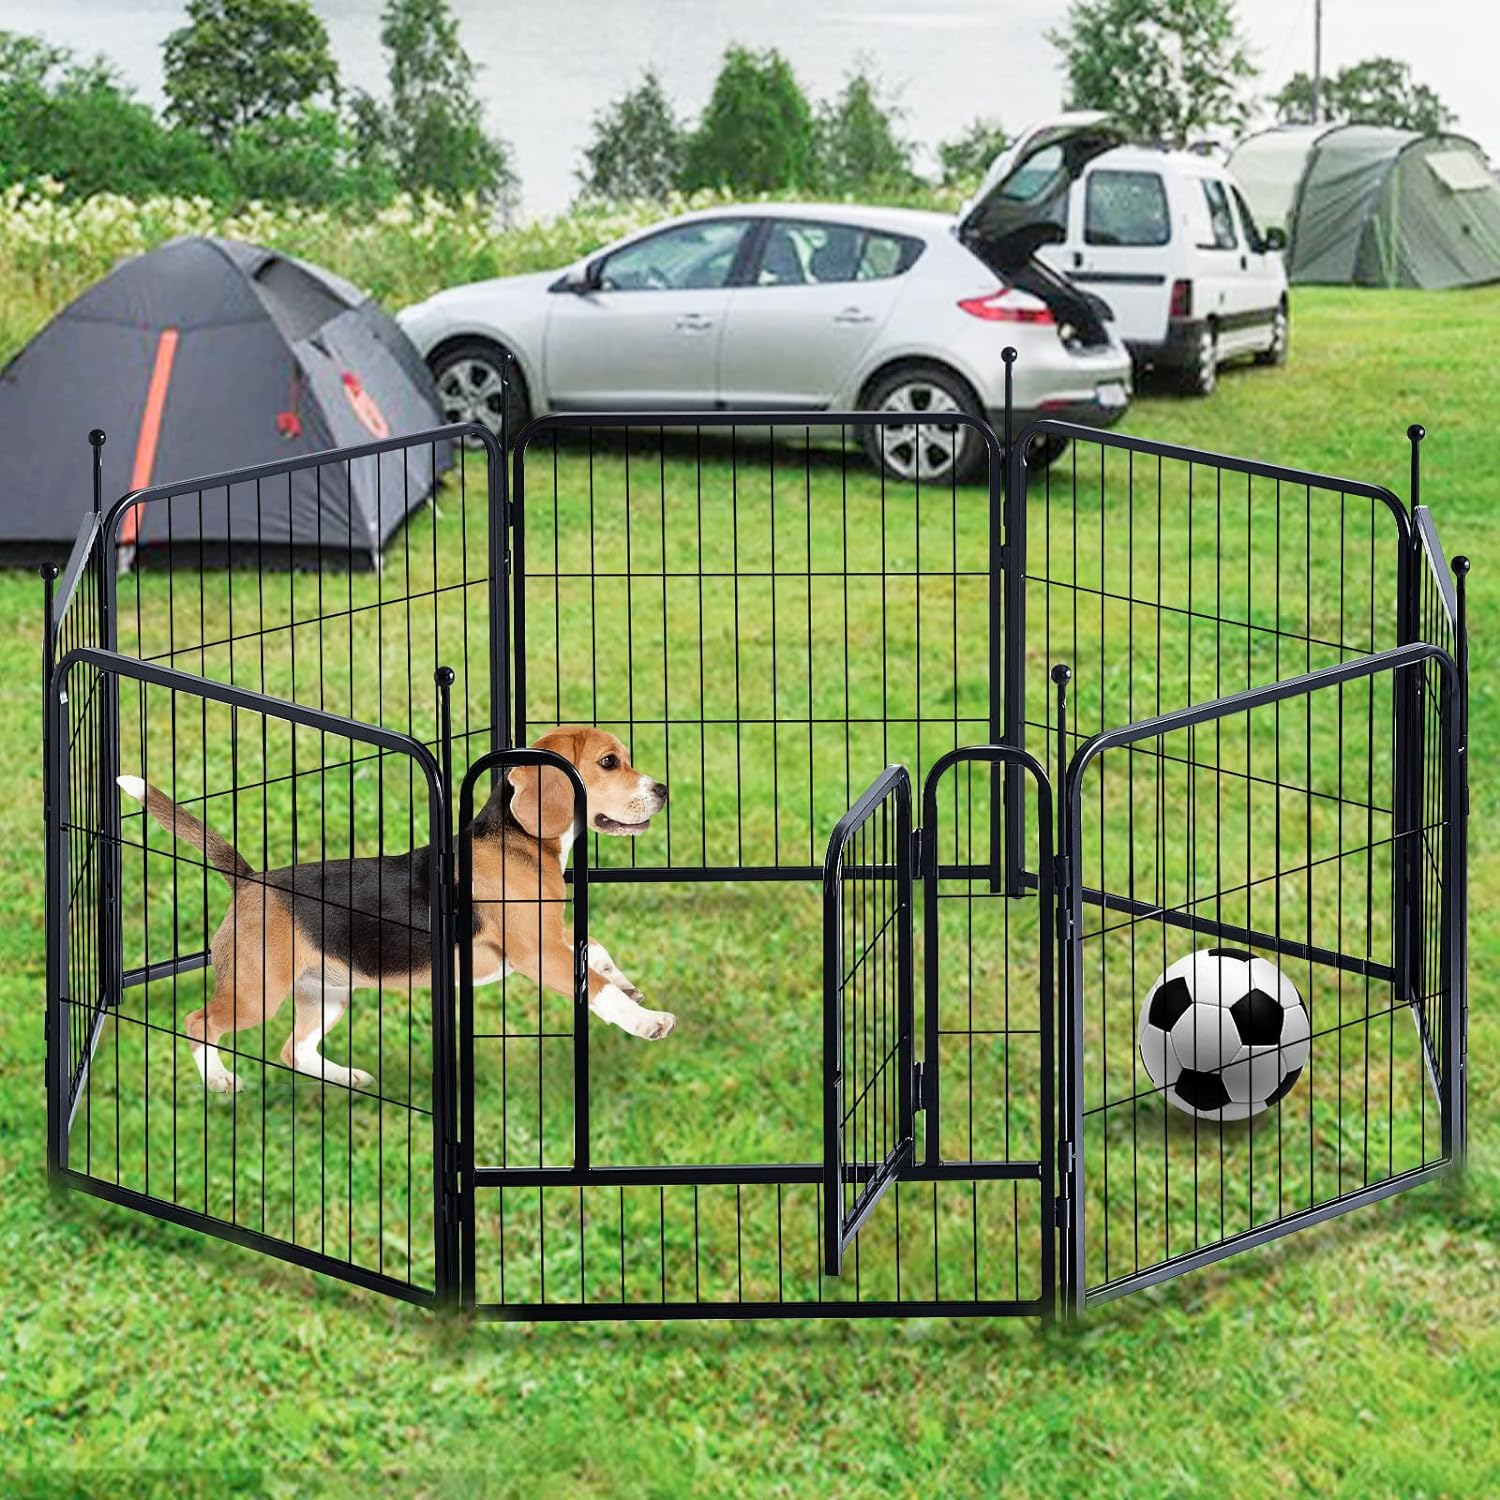 Corralito Plegable De Metal Para Perros/Mascotas Con Puerta De 36